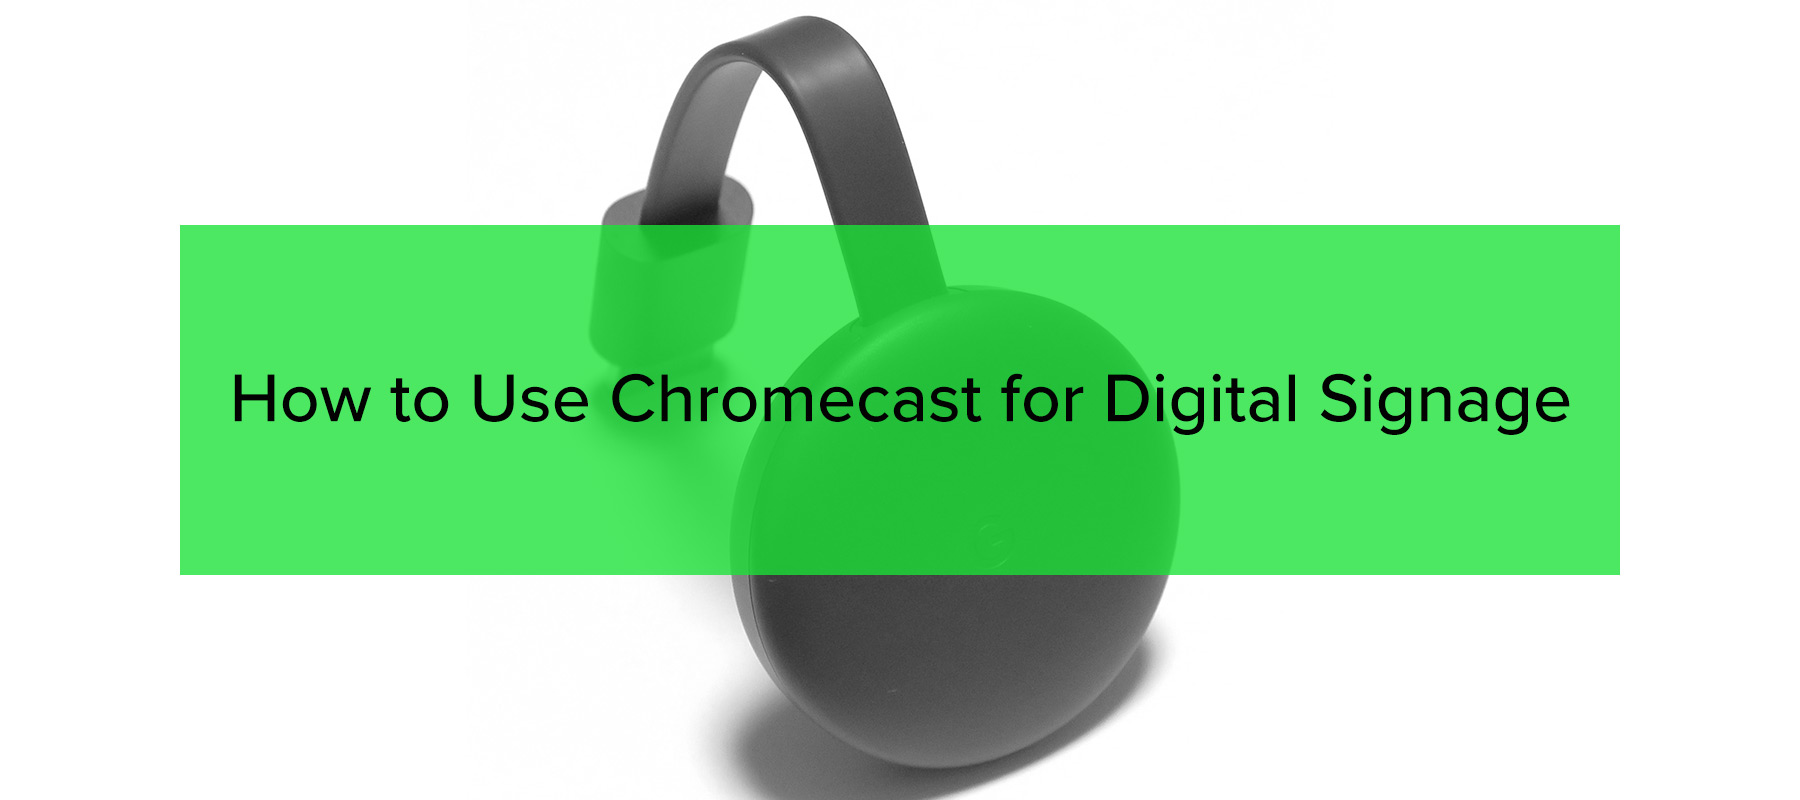 How to Use Chromecast for Digital Signage